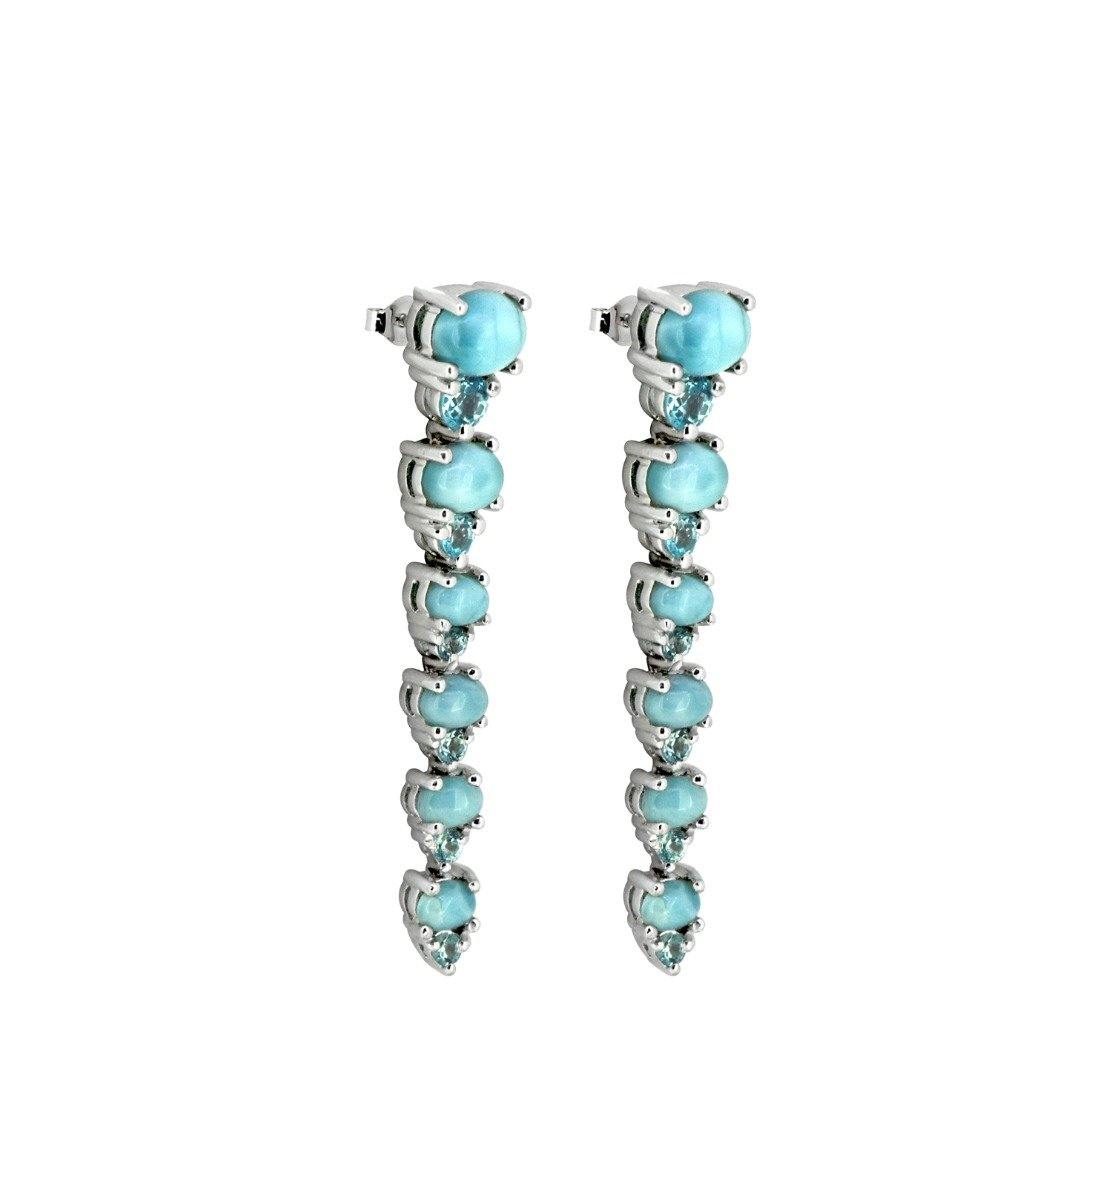 5.33 Larimar Swiss Blue Topaz Solid 925 Sterling Silver Drop Earrings Jewelry - YoTreasure